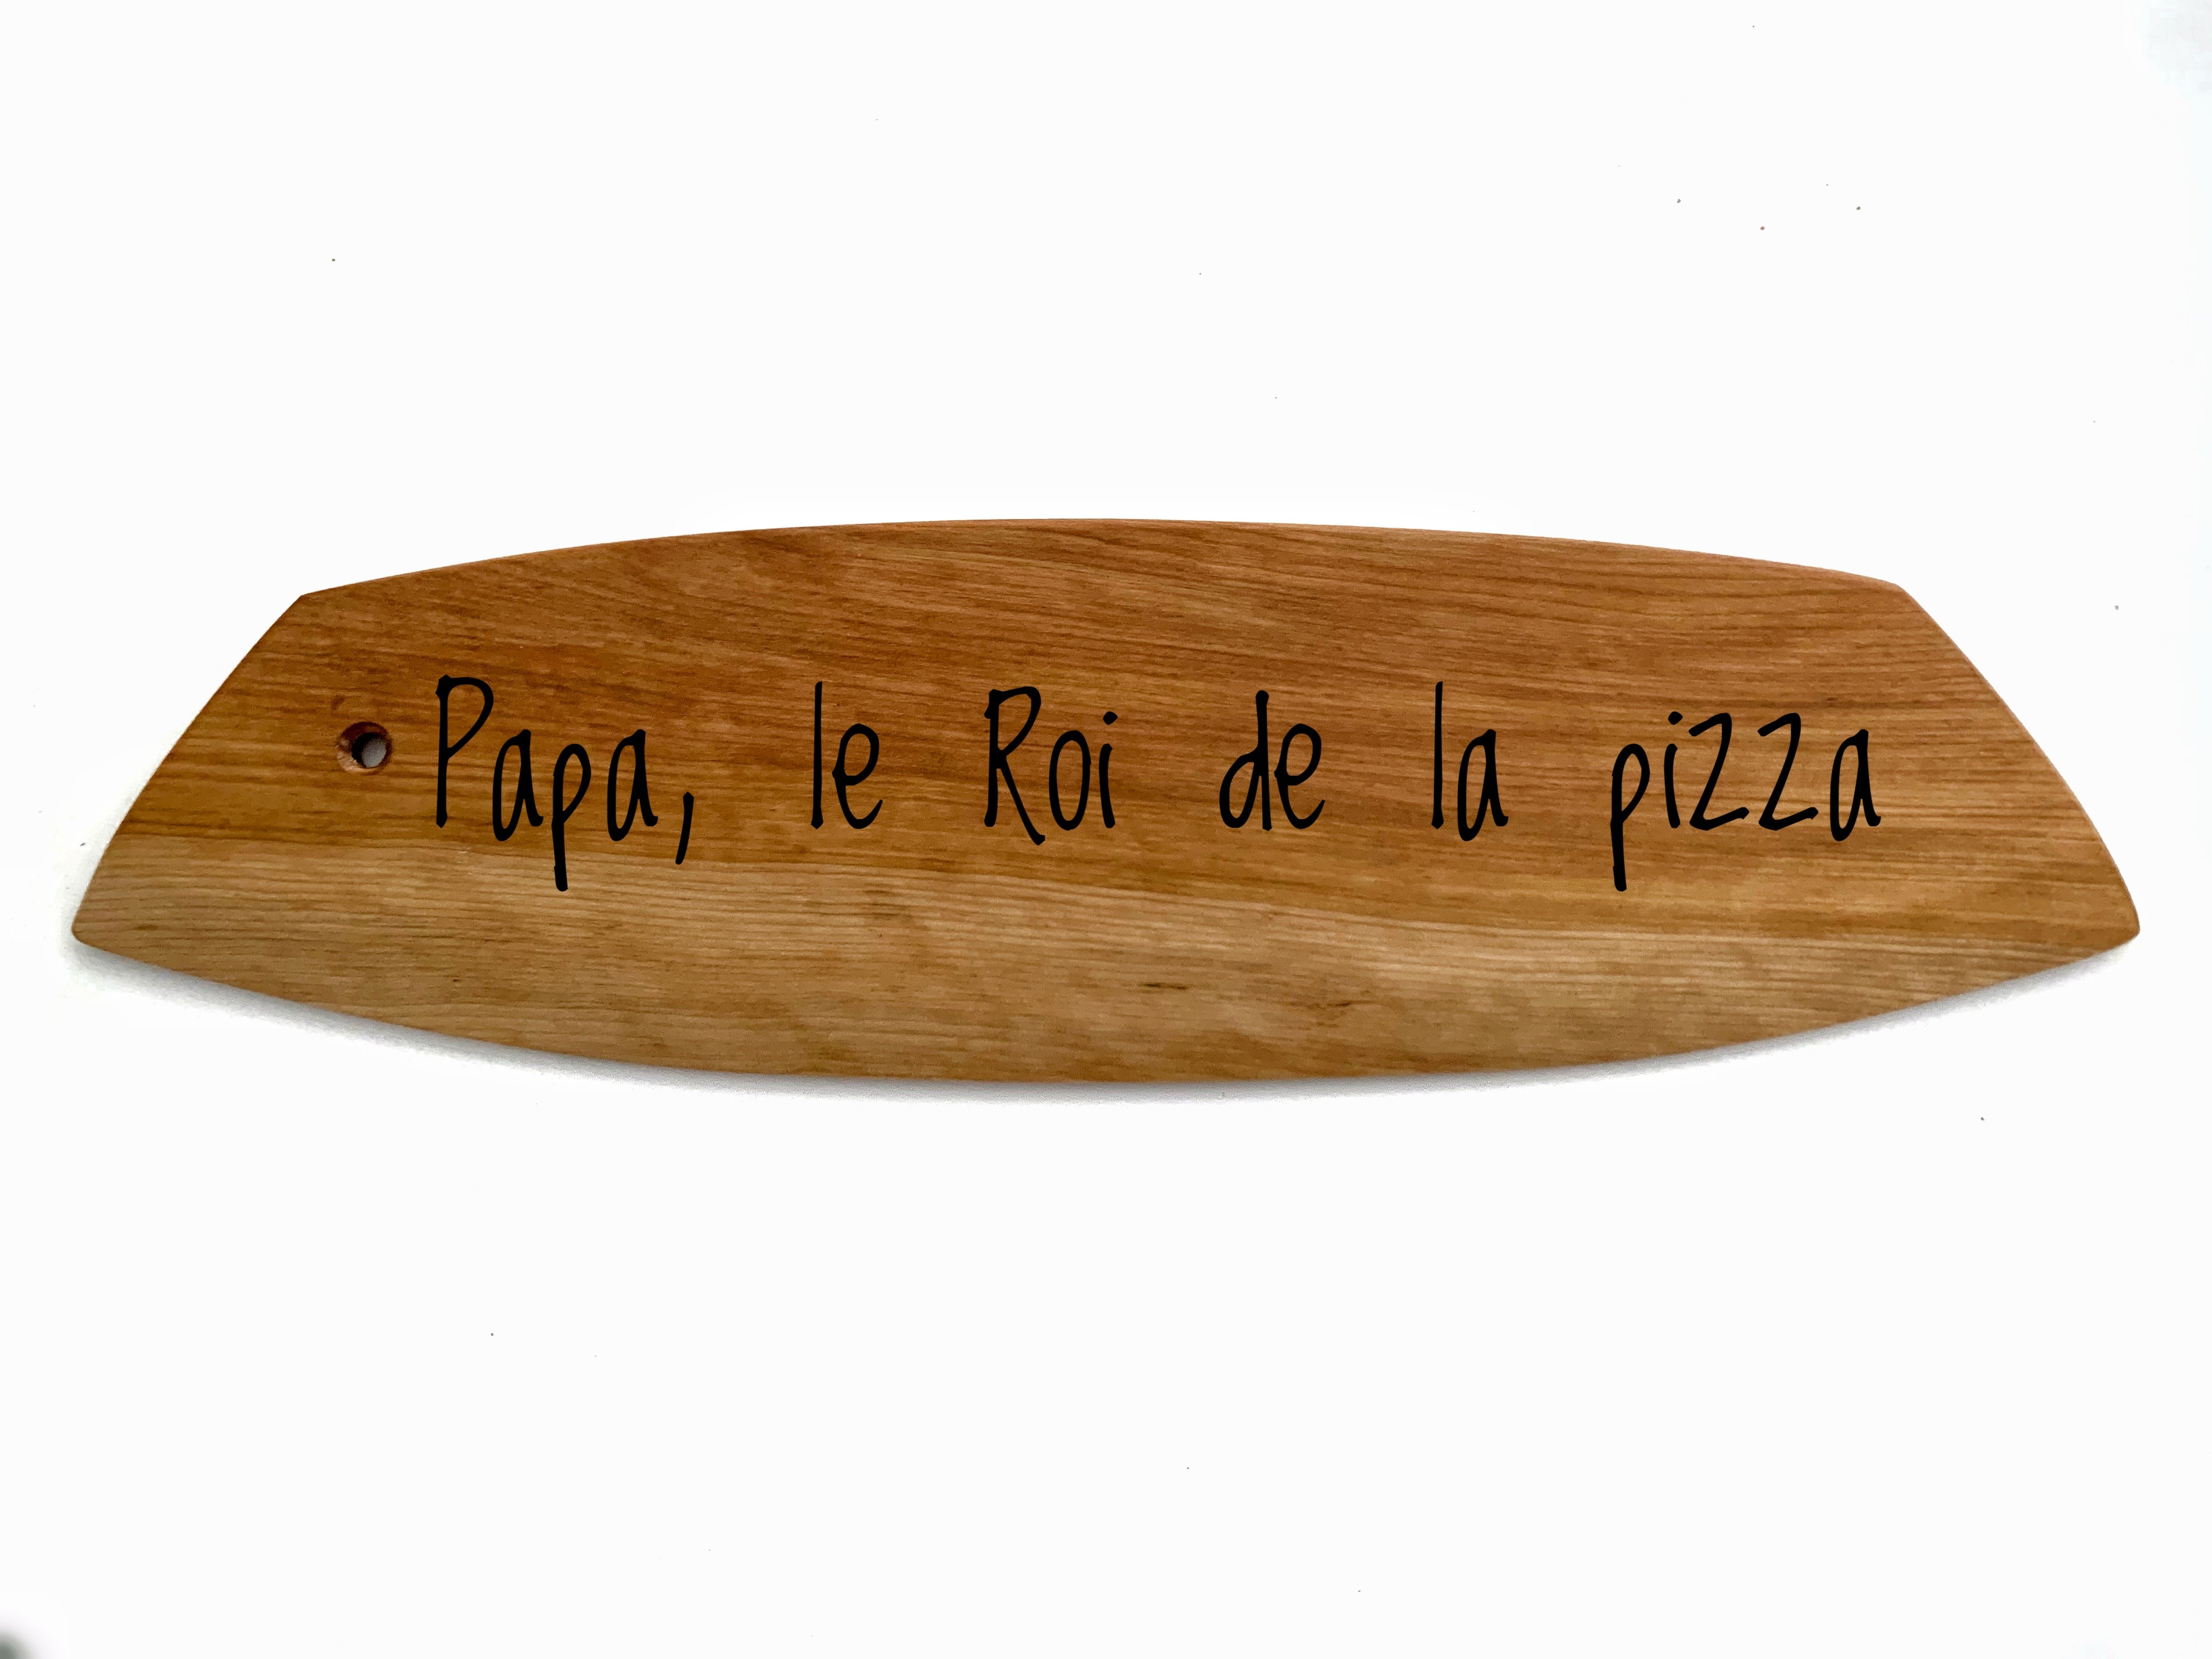 Couteau à pizza